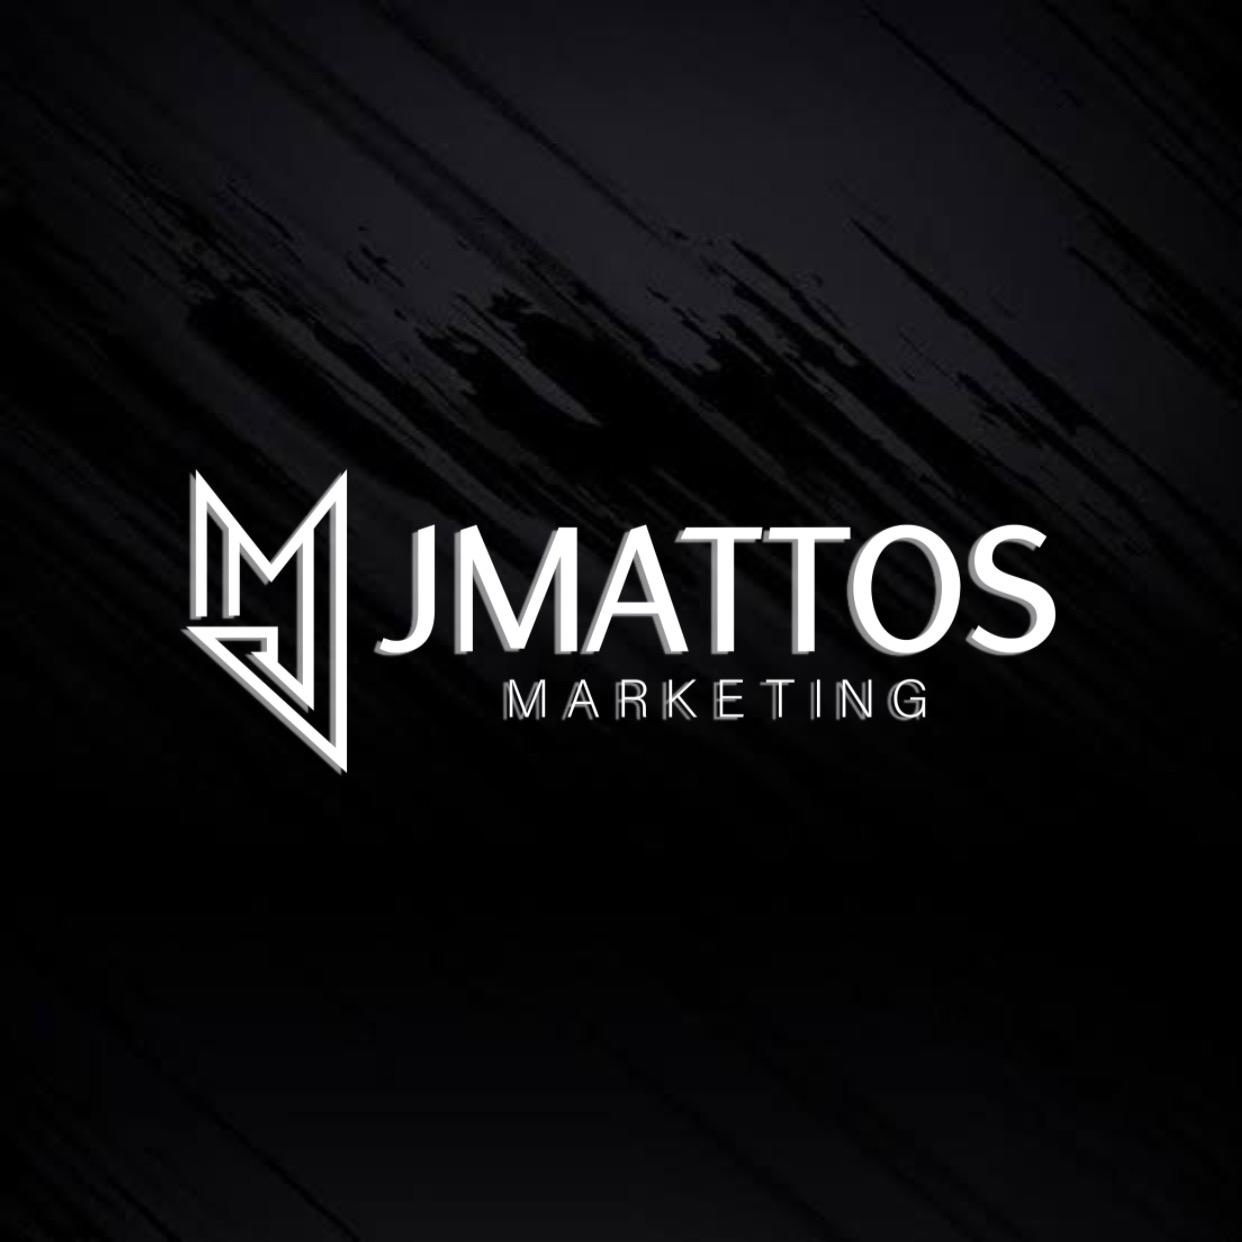 JMattos Marketing, empresa que vem aproveitando as oportunidades trazidas pela pandemia